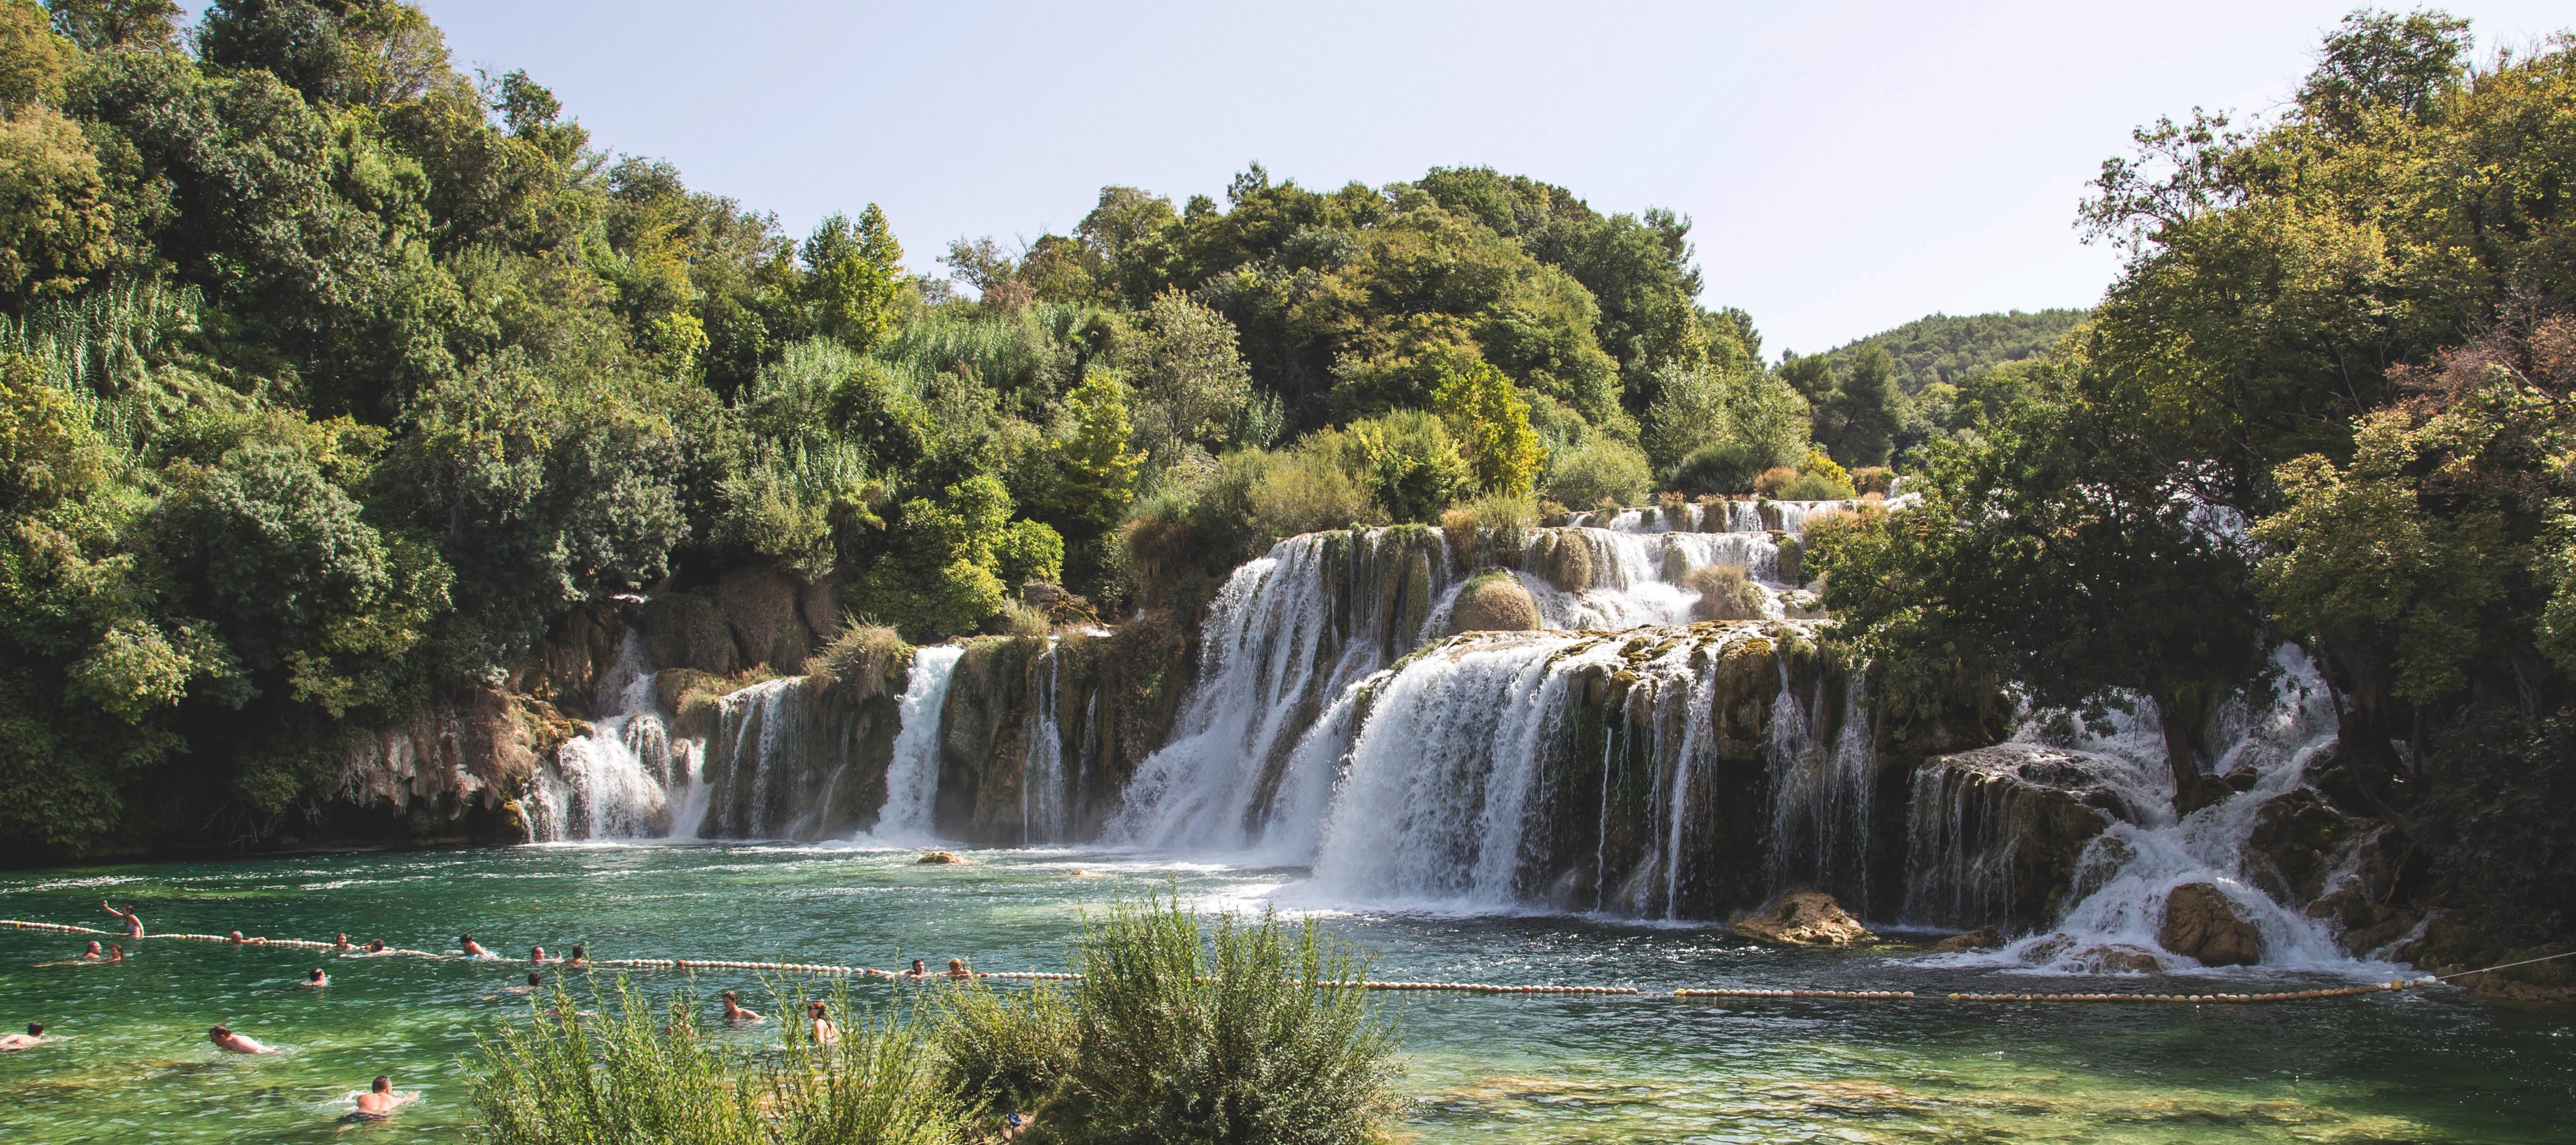 Waterfall in Krka National Park in Croatia